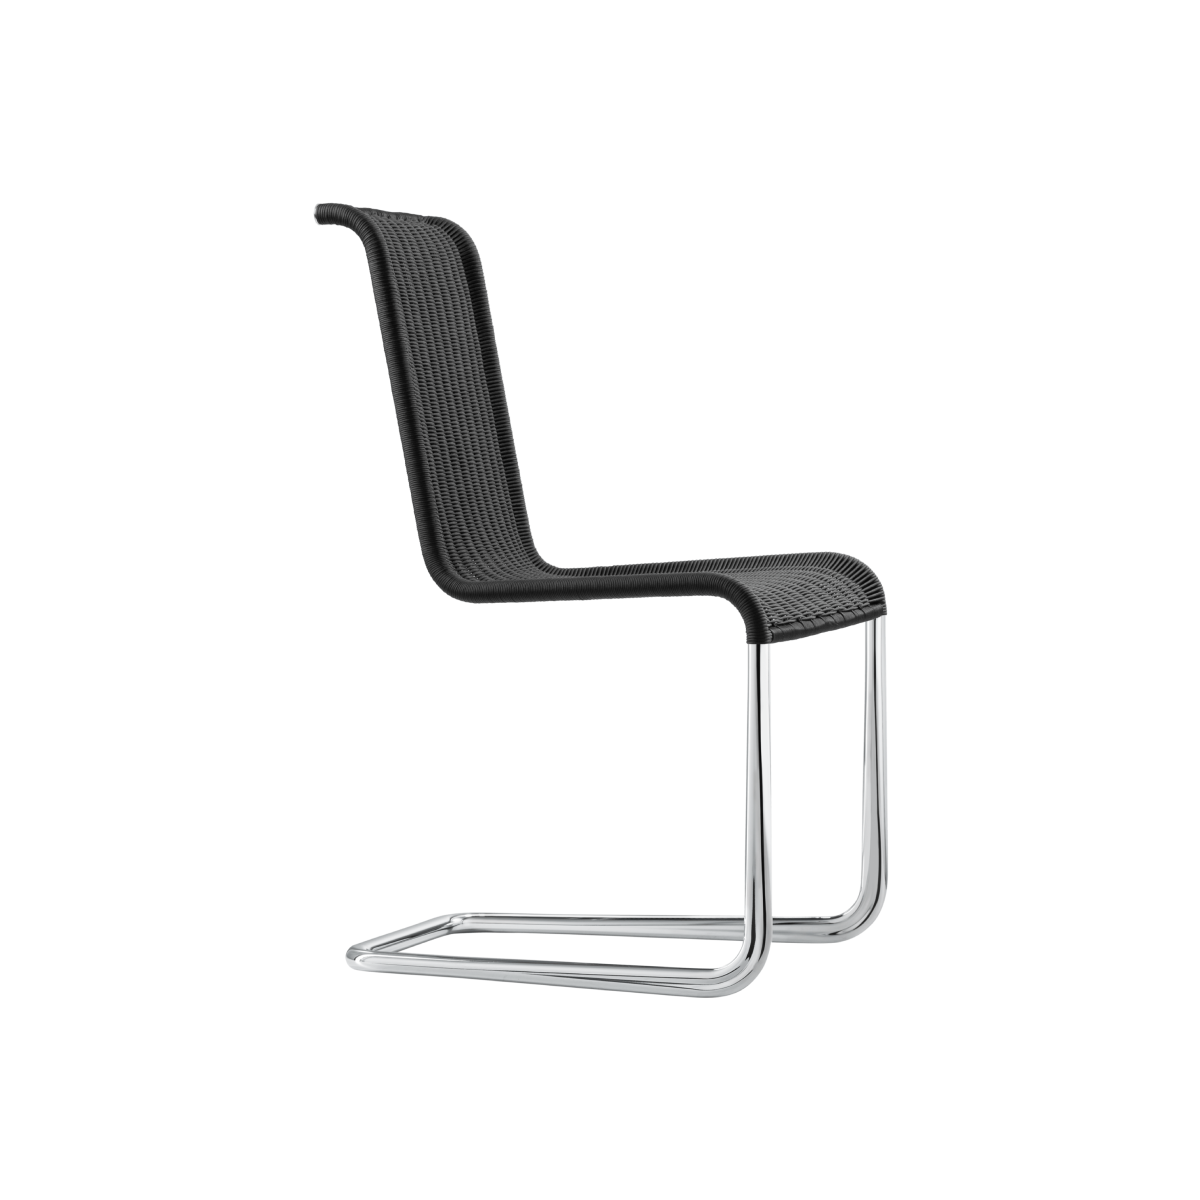 TECTA B20 Cantilever Chair - Black